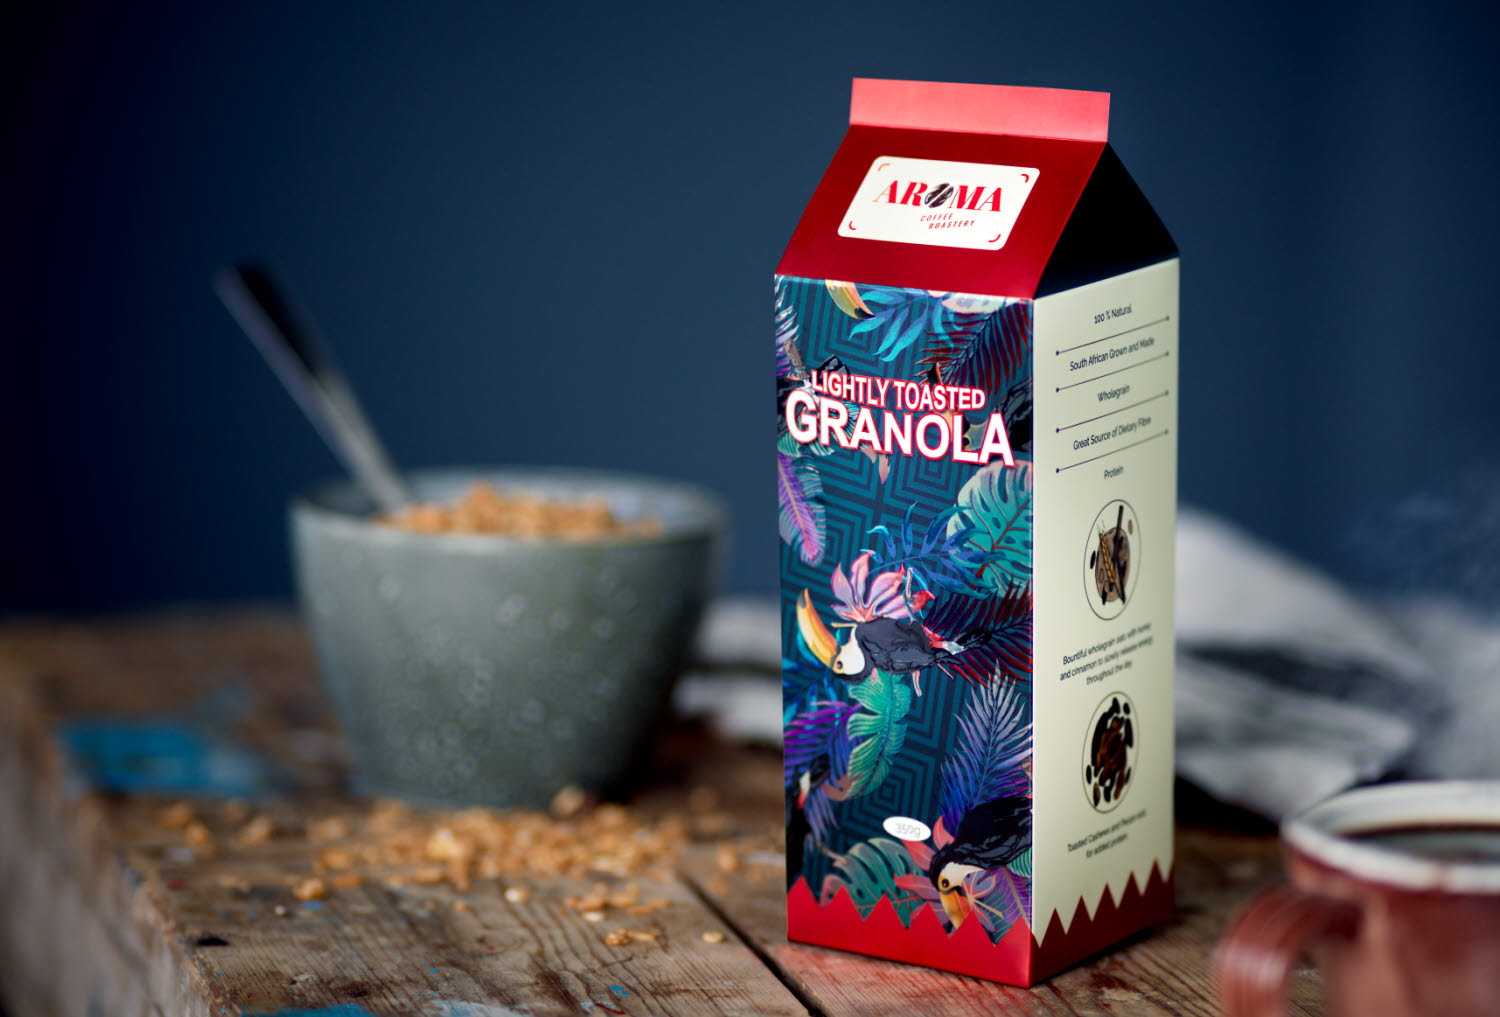 aroma coffee roastery’s granola packaging